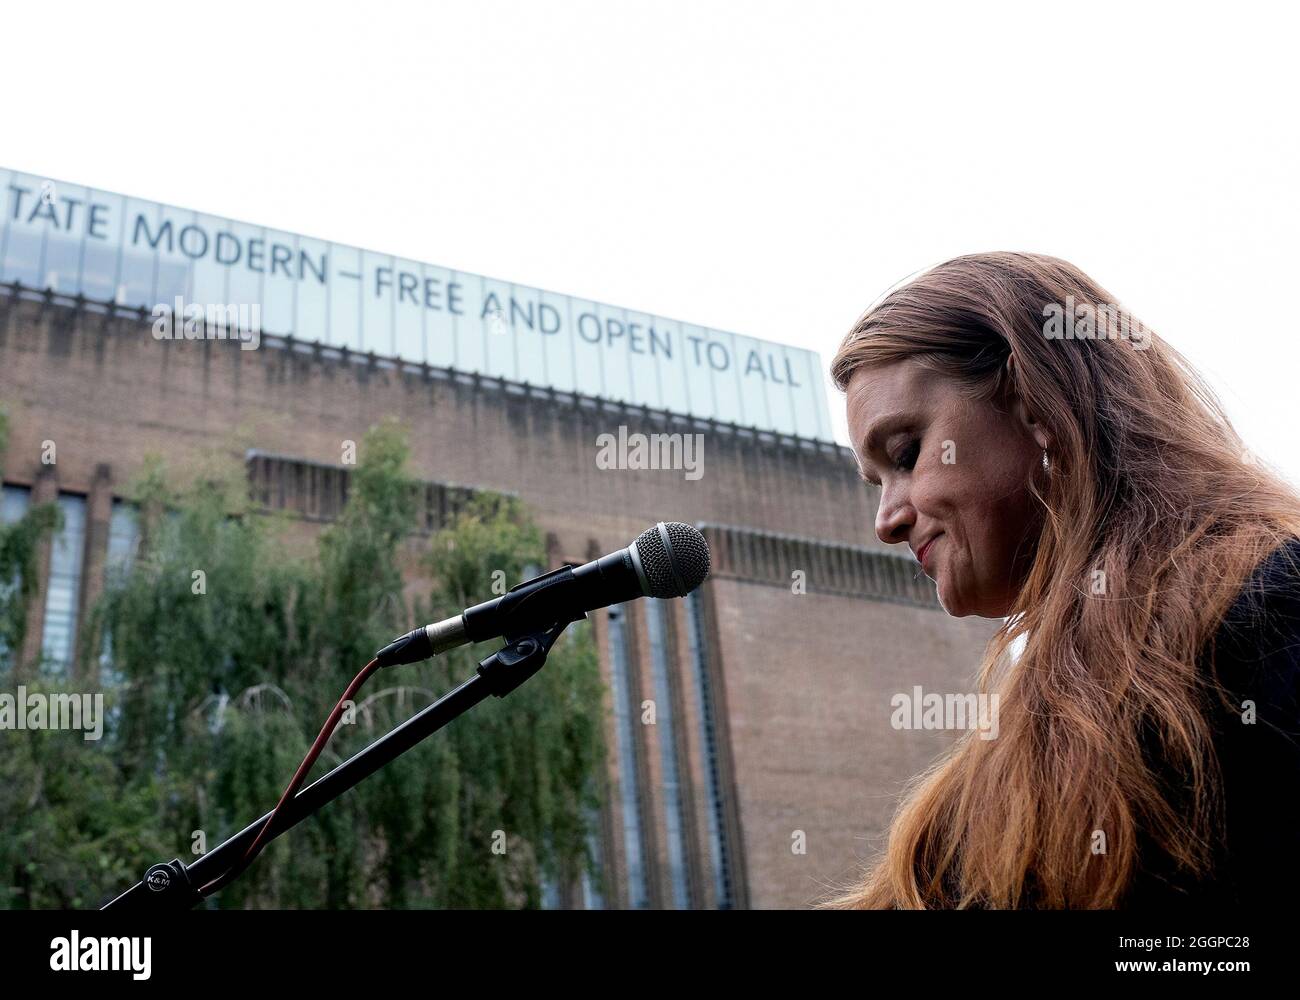 Eine Rednerin nimmt sich einen Moment Zeit, während sich Protestierenden vor dem Aussterben vor der Tate Modern versammeln Rebellions Massenfreitagsdemonstration am elften Tag ihrer Impossible Rebellion-Proteste in London, Großbritannien, am 2. September 2021. Stockfoto